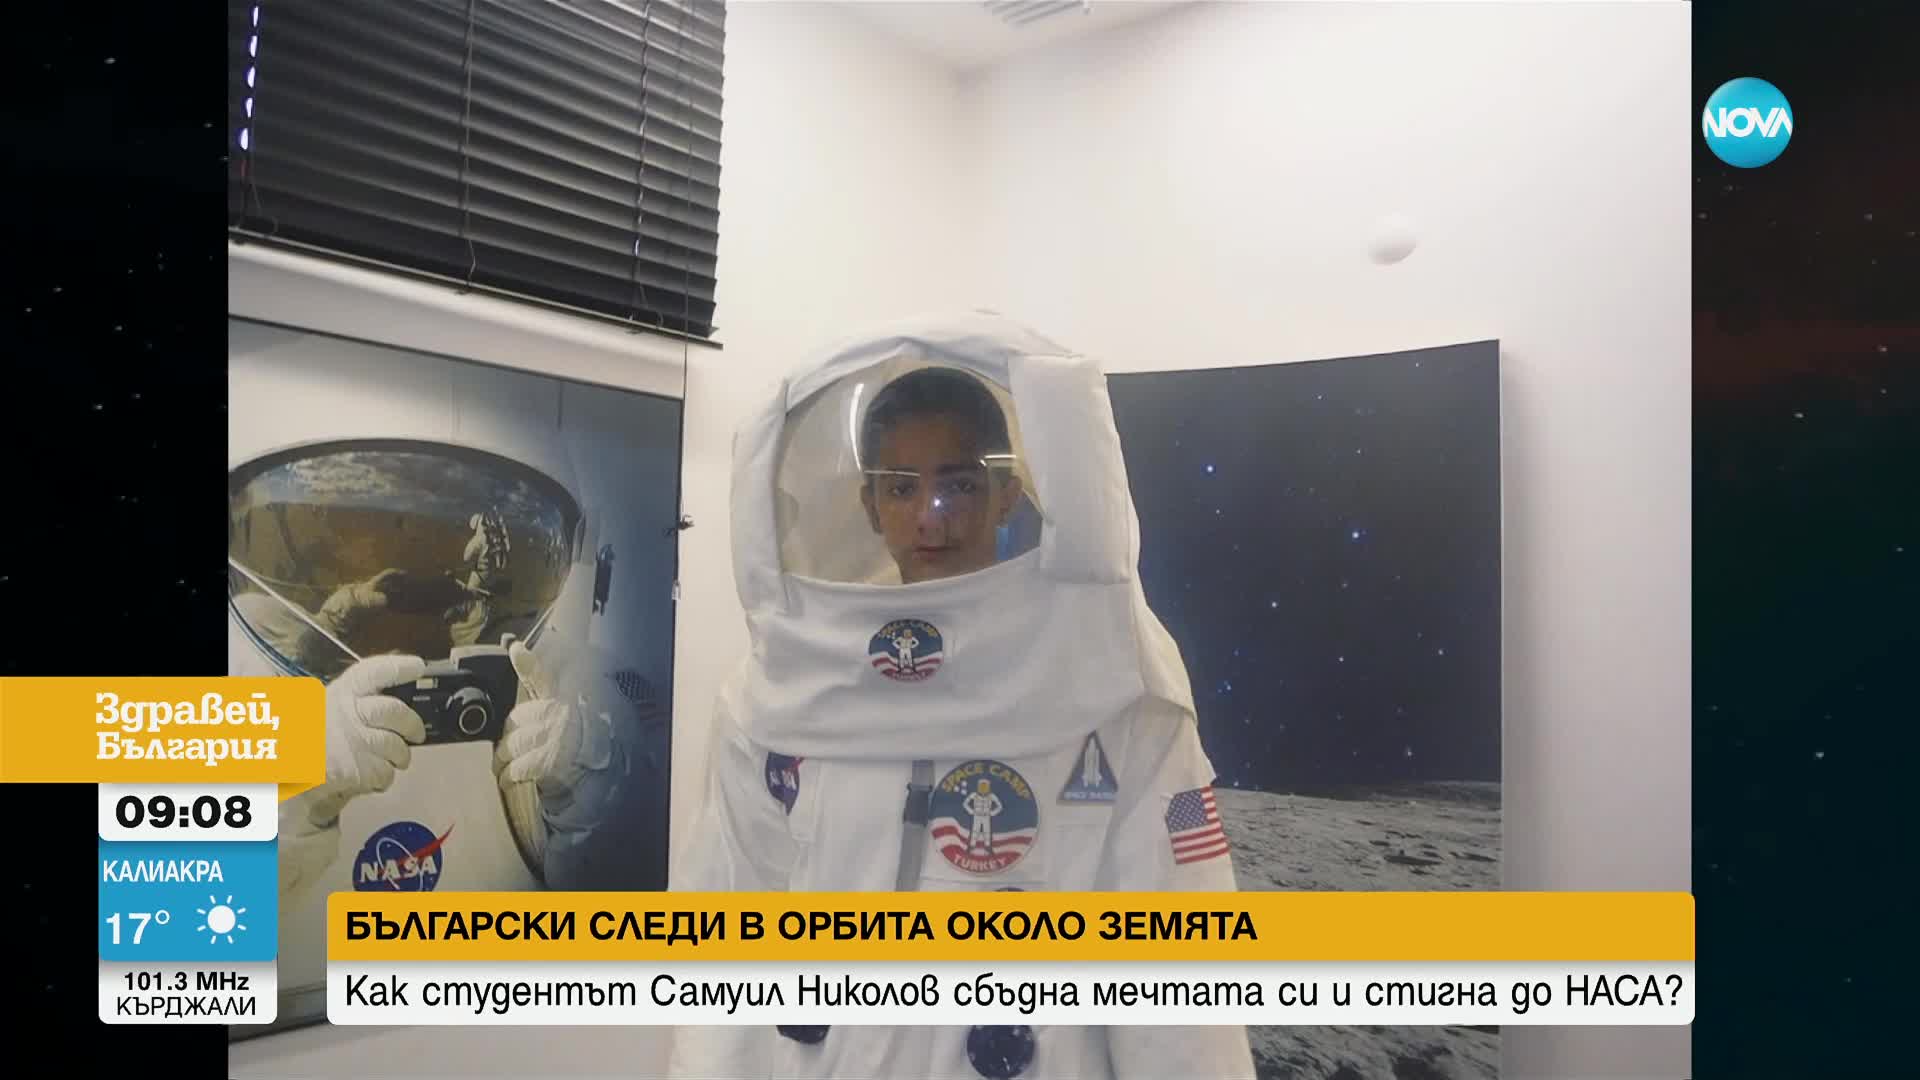 Българинът, който учи към НАСА: Мечтая да изстрелям ракета от България към Космоса